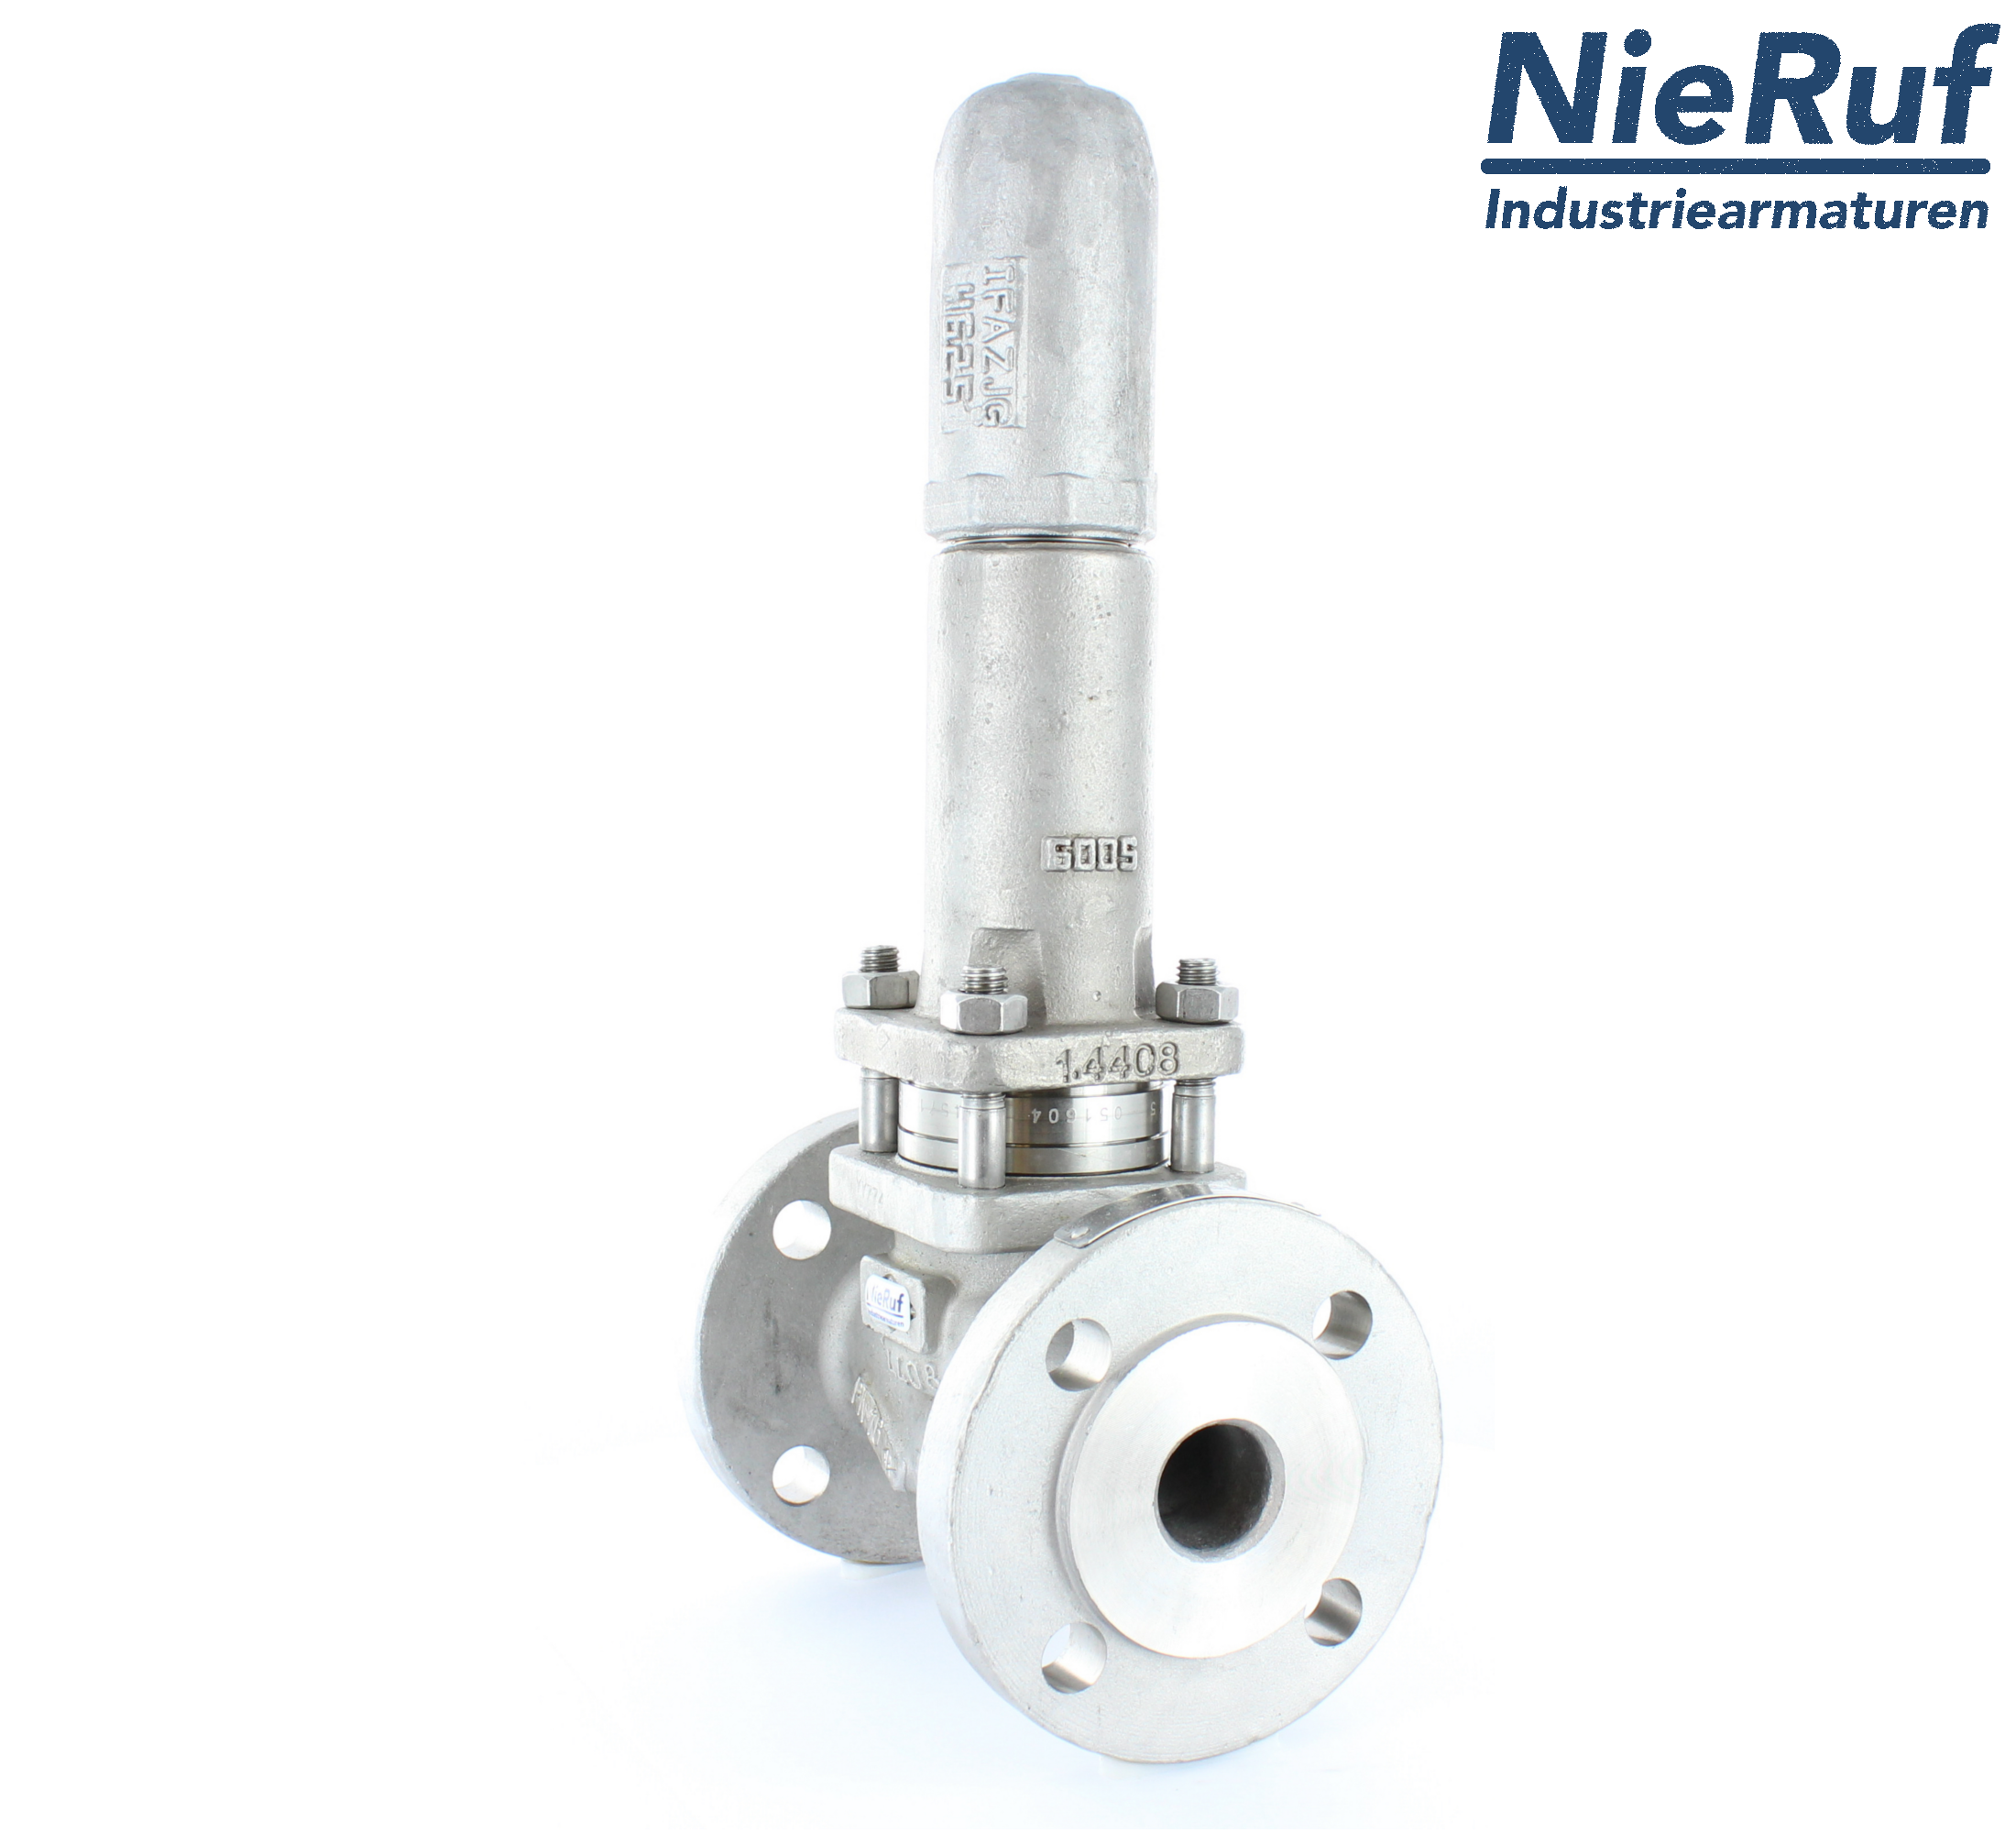 piston overflow valve DN 20 UV13 cast iron 1.0619+N 4,0 - 10,0 bar